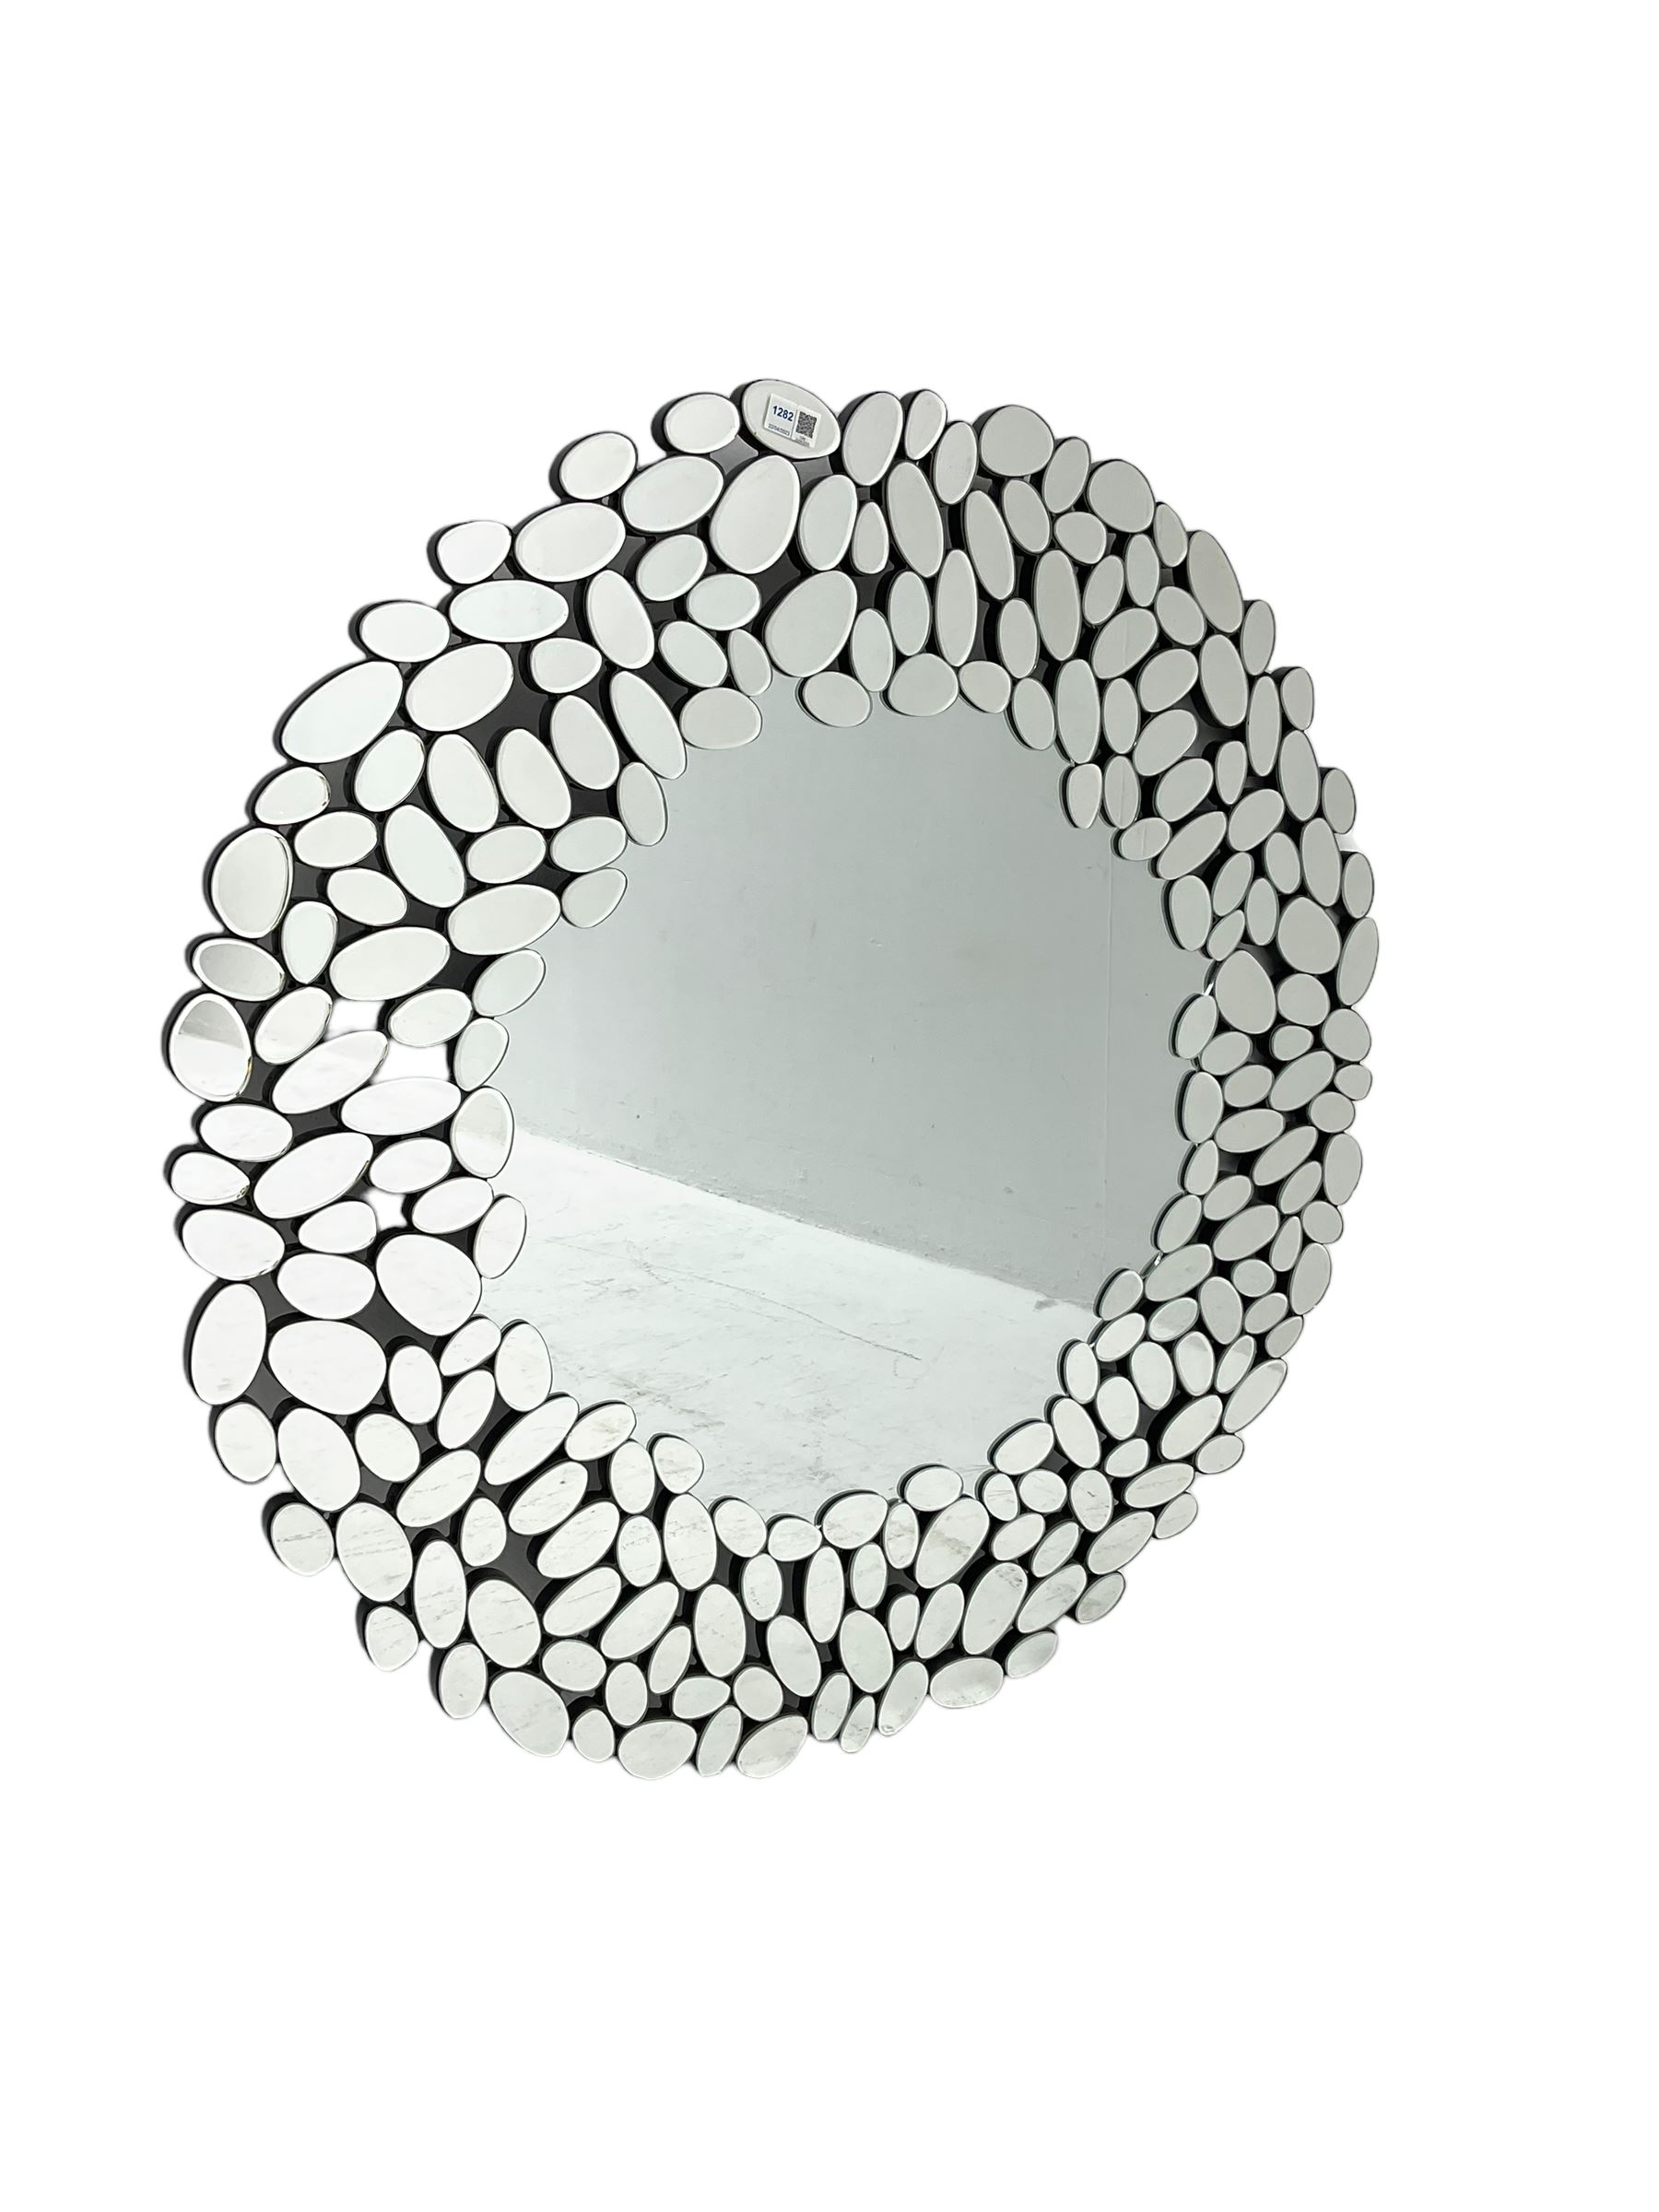 Contemporary sunburst design mirror